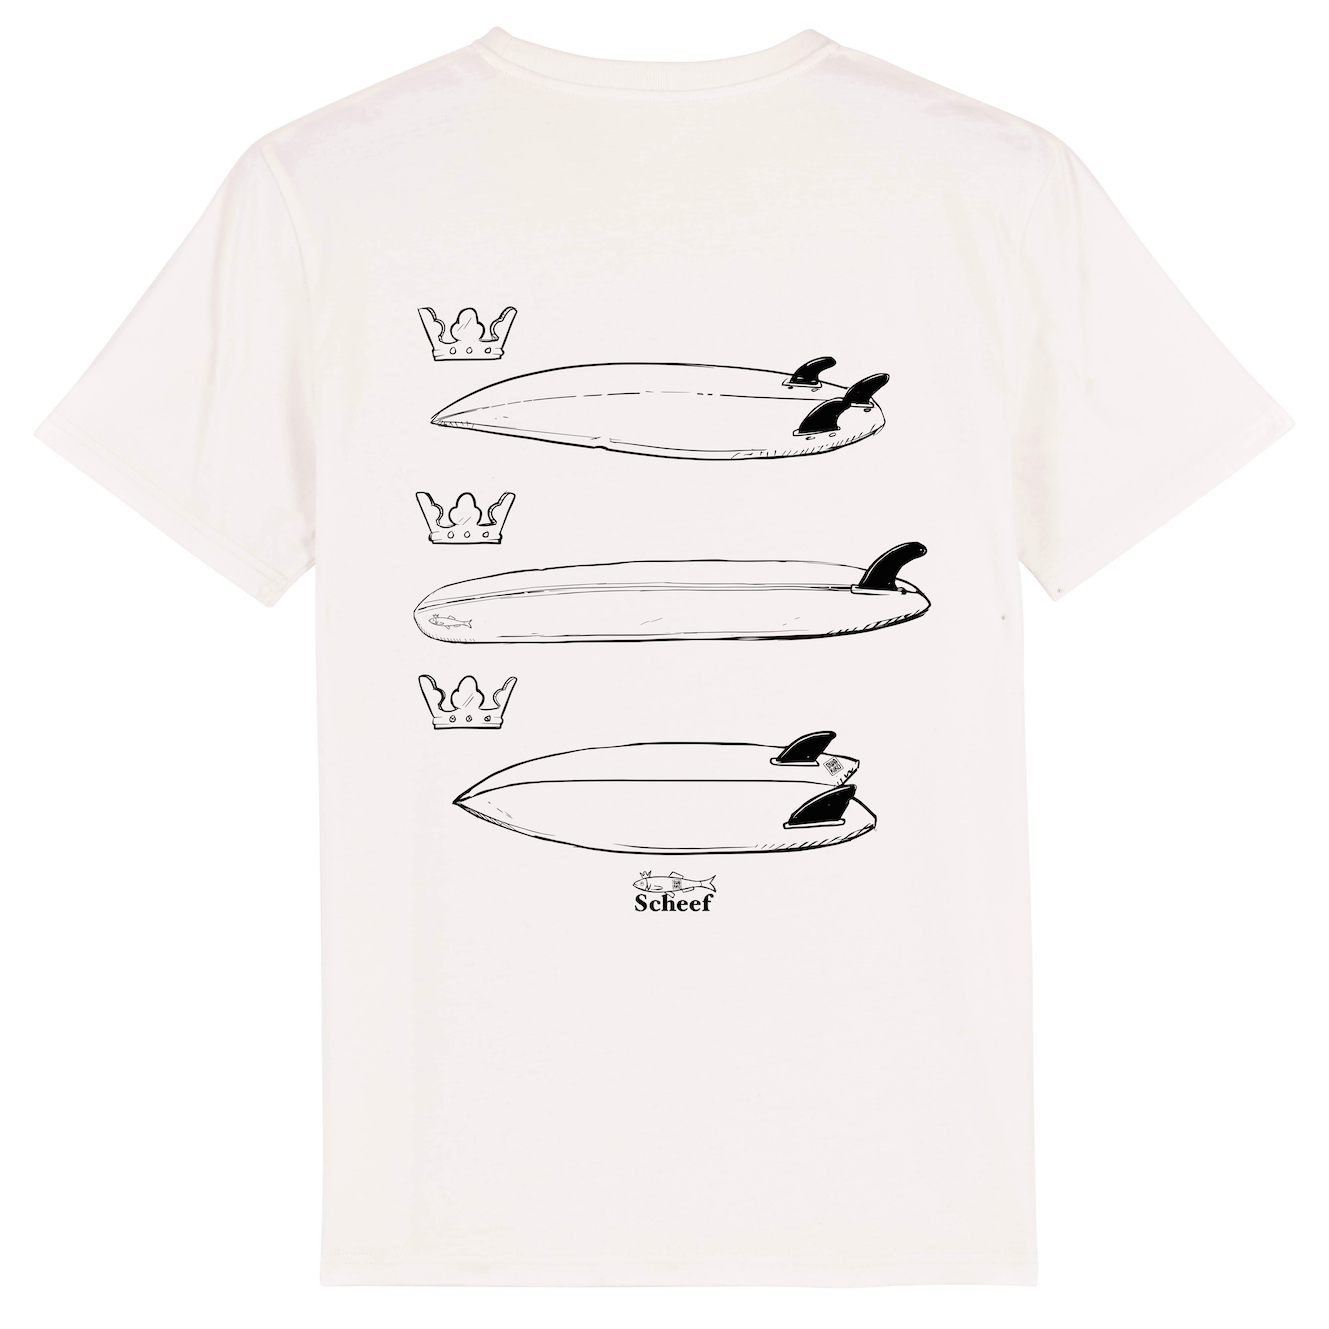 Wit Surf stijl T-shirt met 3 surfboards als verwijzing naar het wapen van Scheveningen,